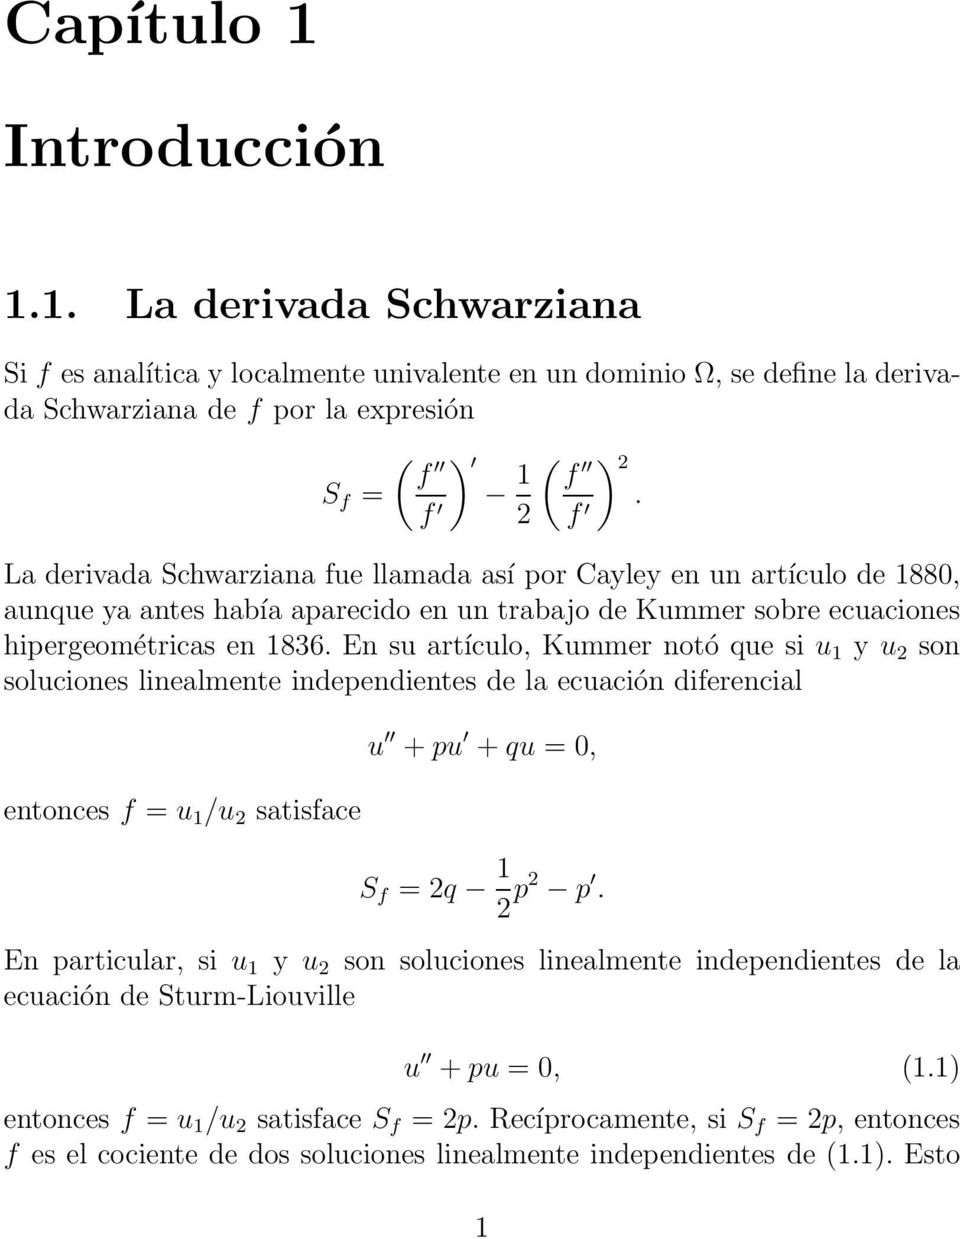 En su artículo, Kummer notó que si u 1 y u 2 son soluciones linealmente independientes de la ecuación diferencial entonces f = u 1 /u 2 satisface u +pu +qu = 0, S f = 2q 1 2 p2 p.